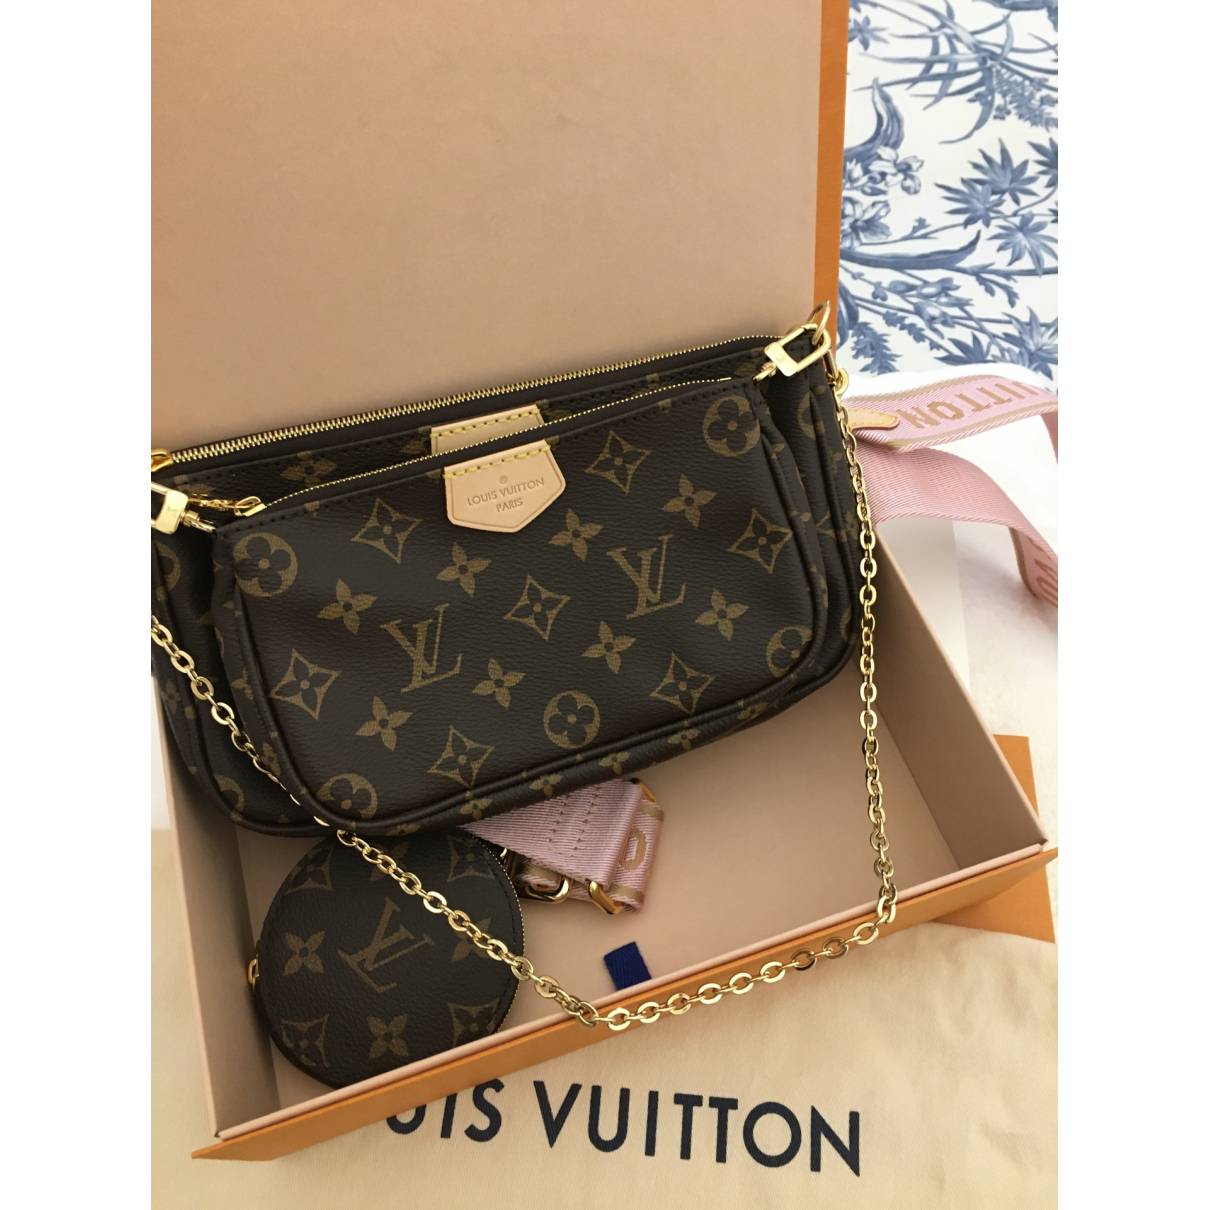 Louis Vuitton - Authenticated Multi Pochette Accessoires Handbag - Cloth Brown Plain for Women, Very Good Condition